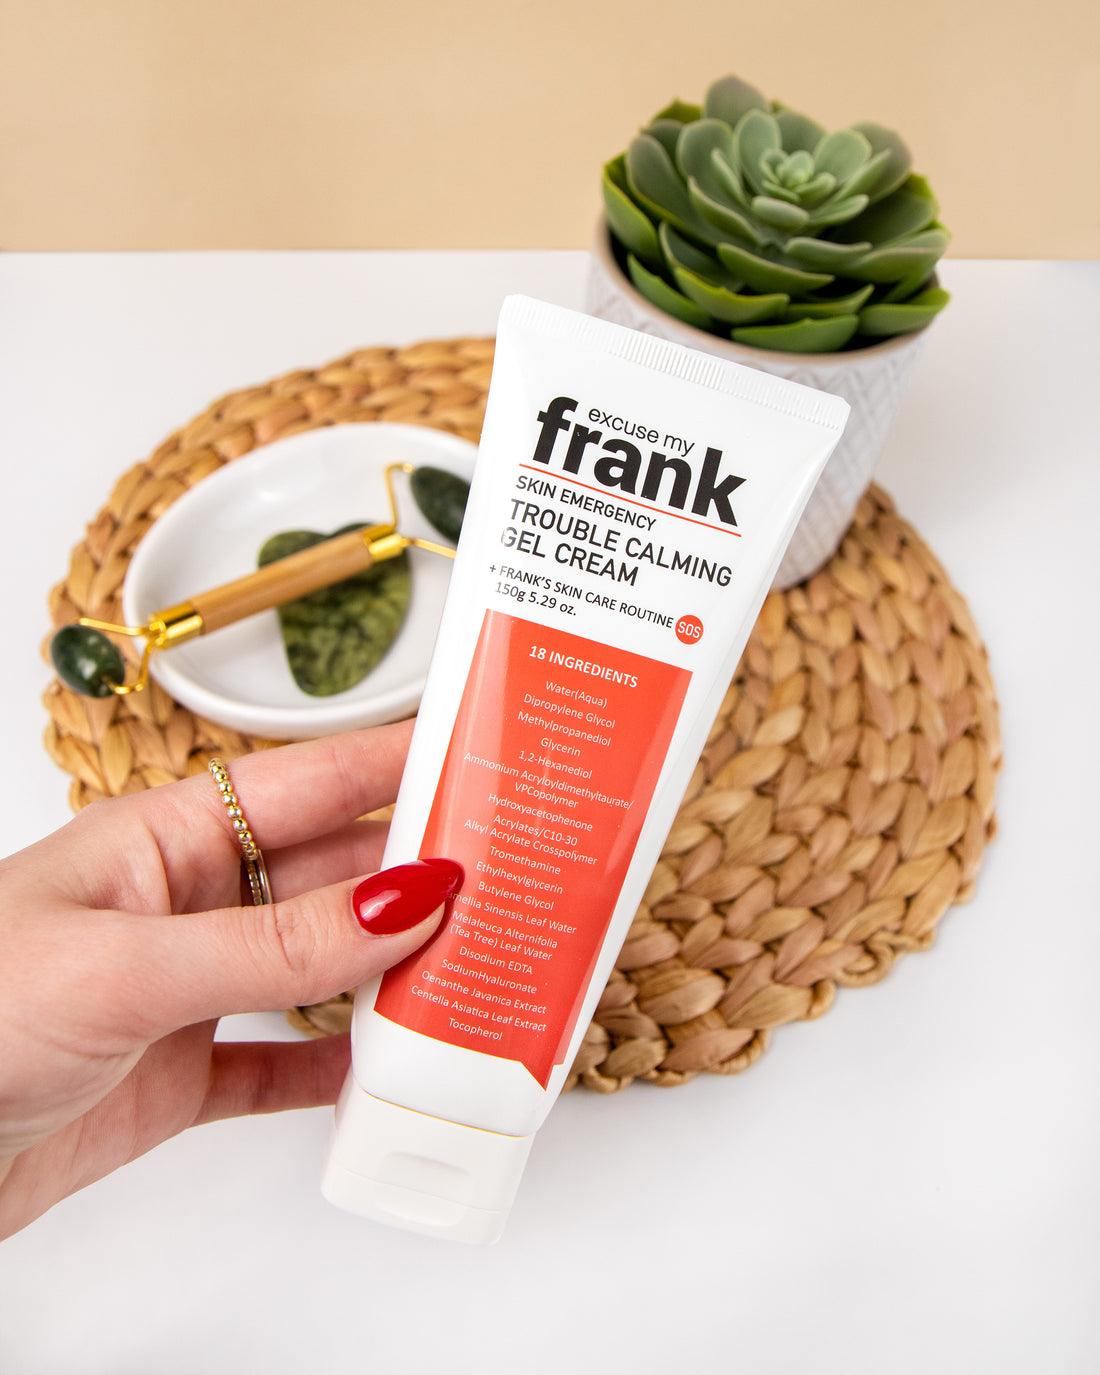 Excuse My Frank | Skin Emergency Trouble Calming Gel Cream